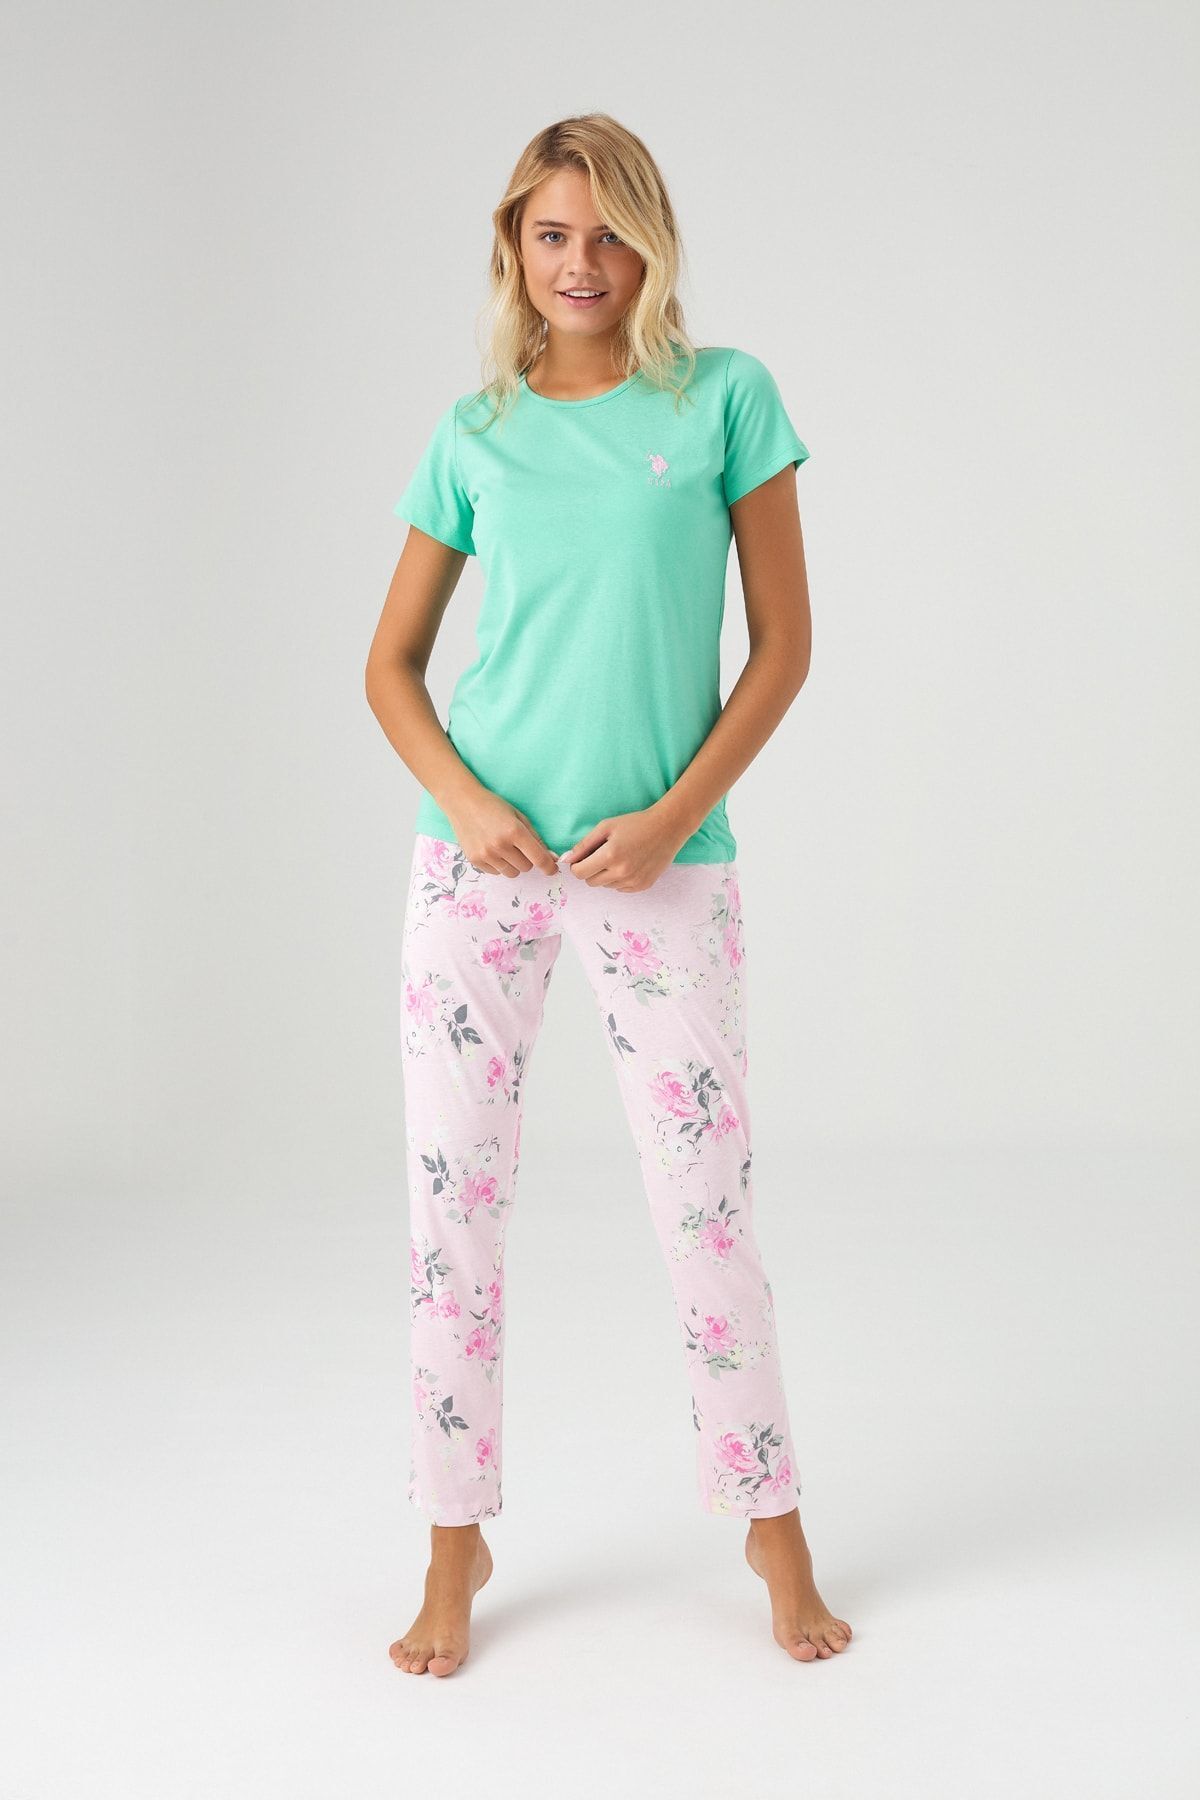 U.S. Polo Assn. Kadın Yeşil Pijama Takımı